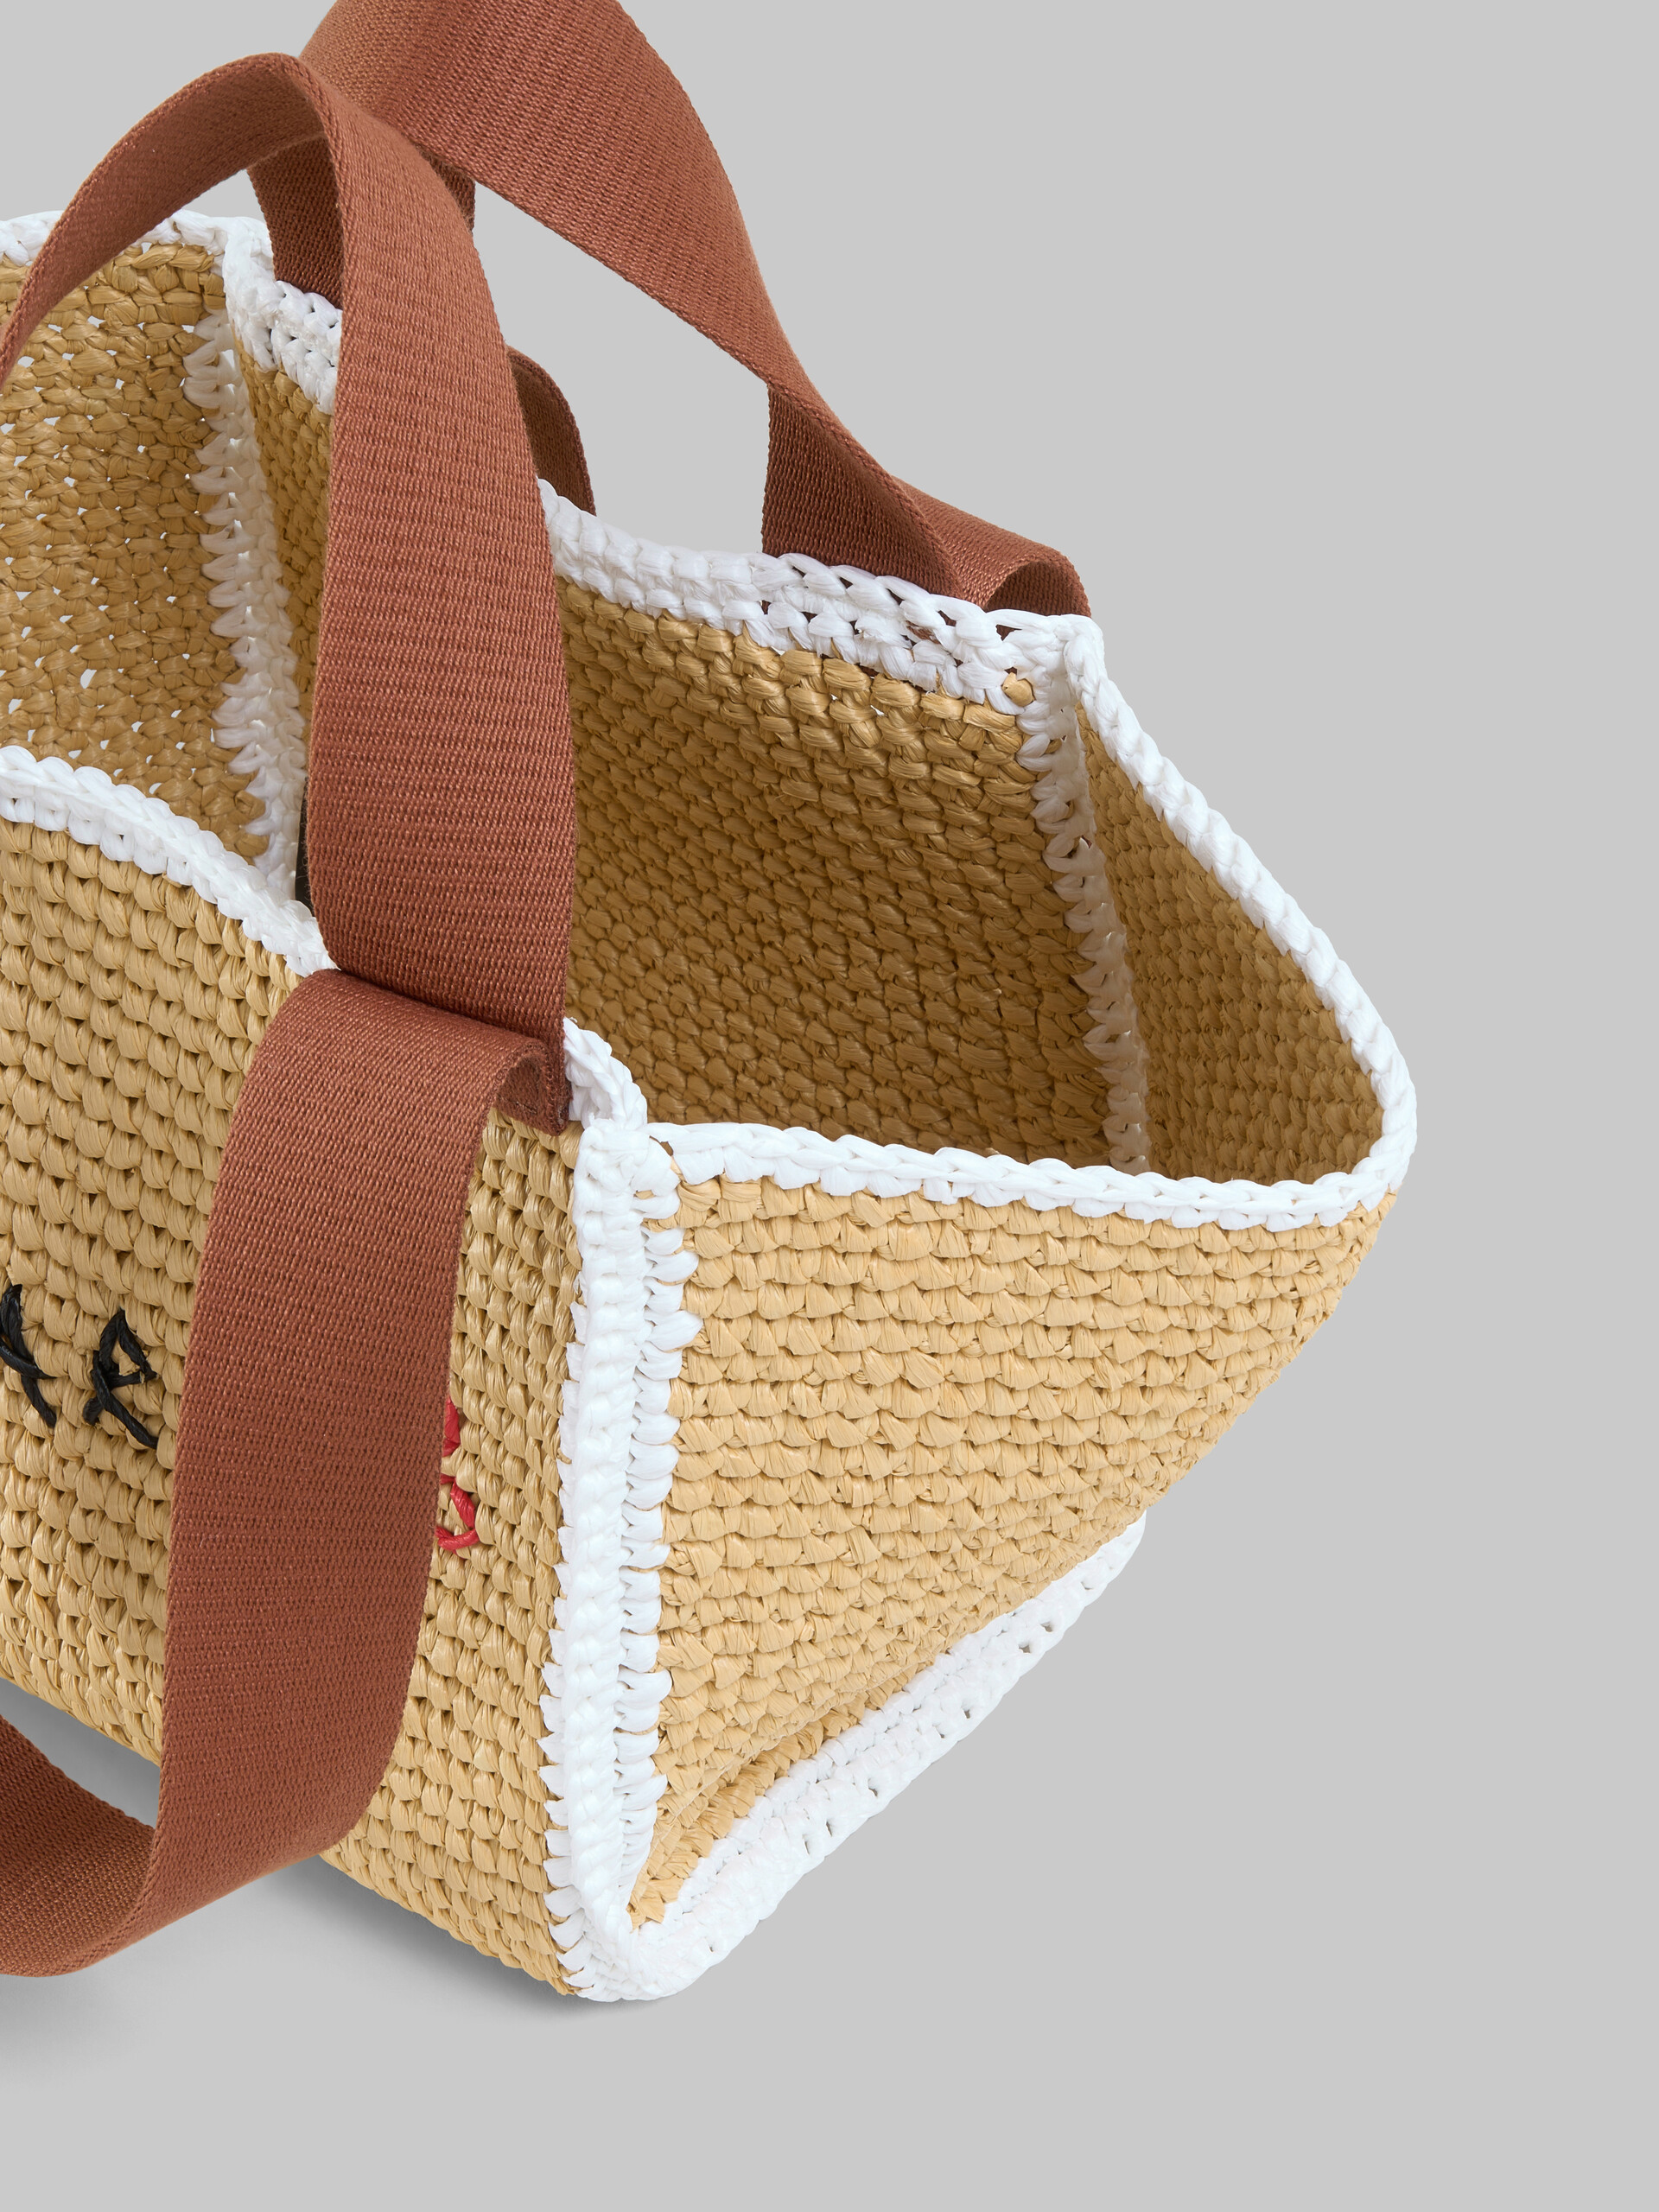 Sillo shopping bag piccola in maglia macramé effetto rafia naturale - Borse shopping - Image 4